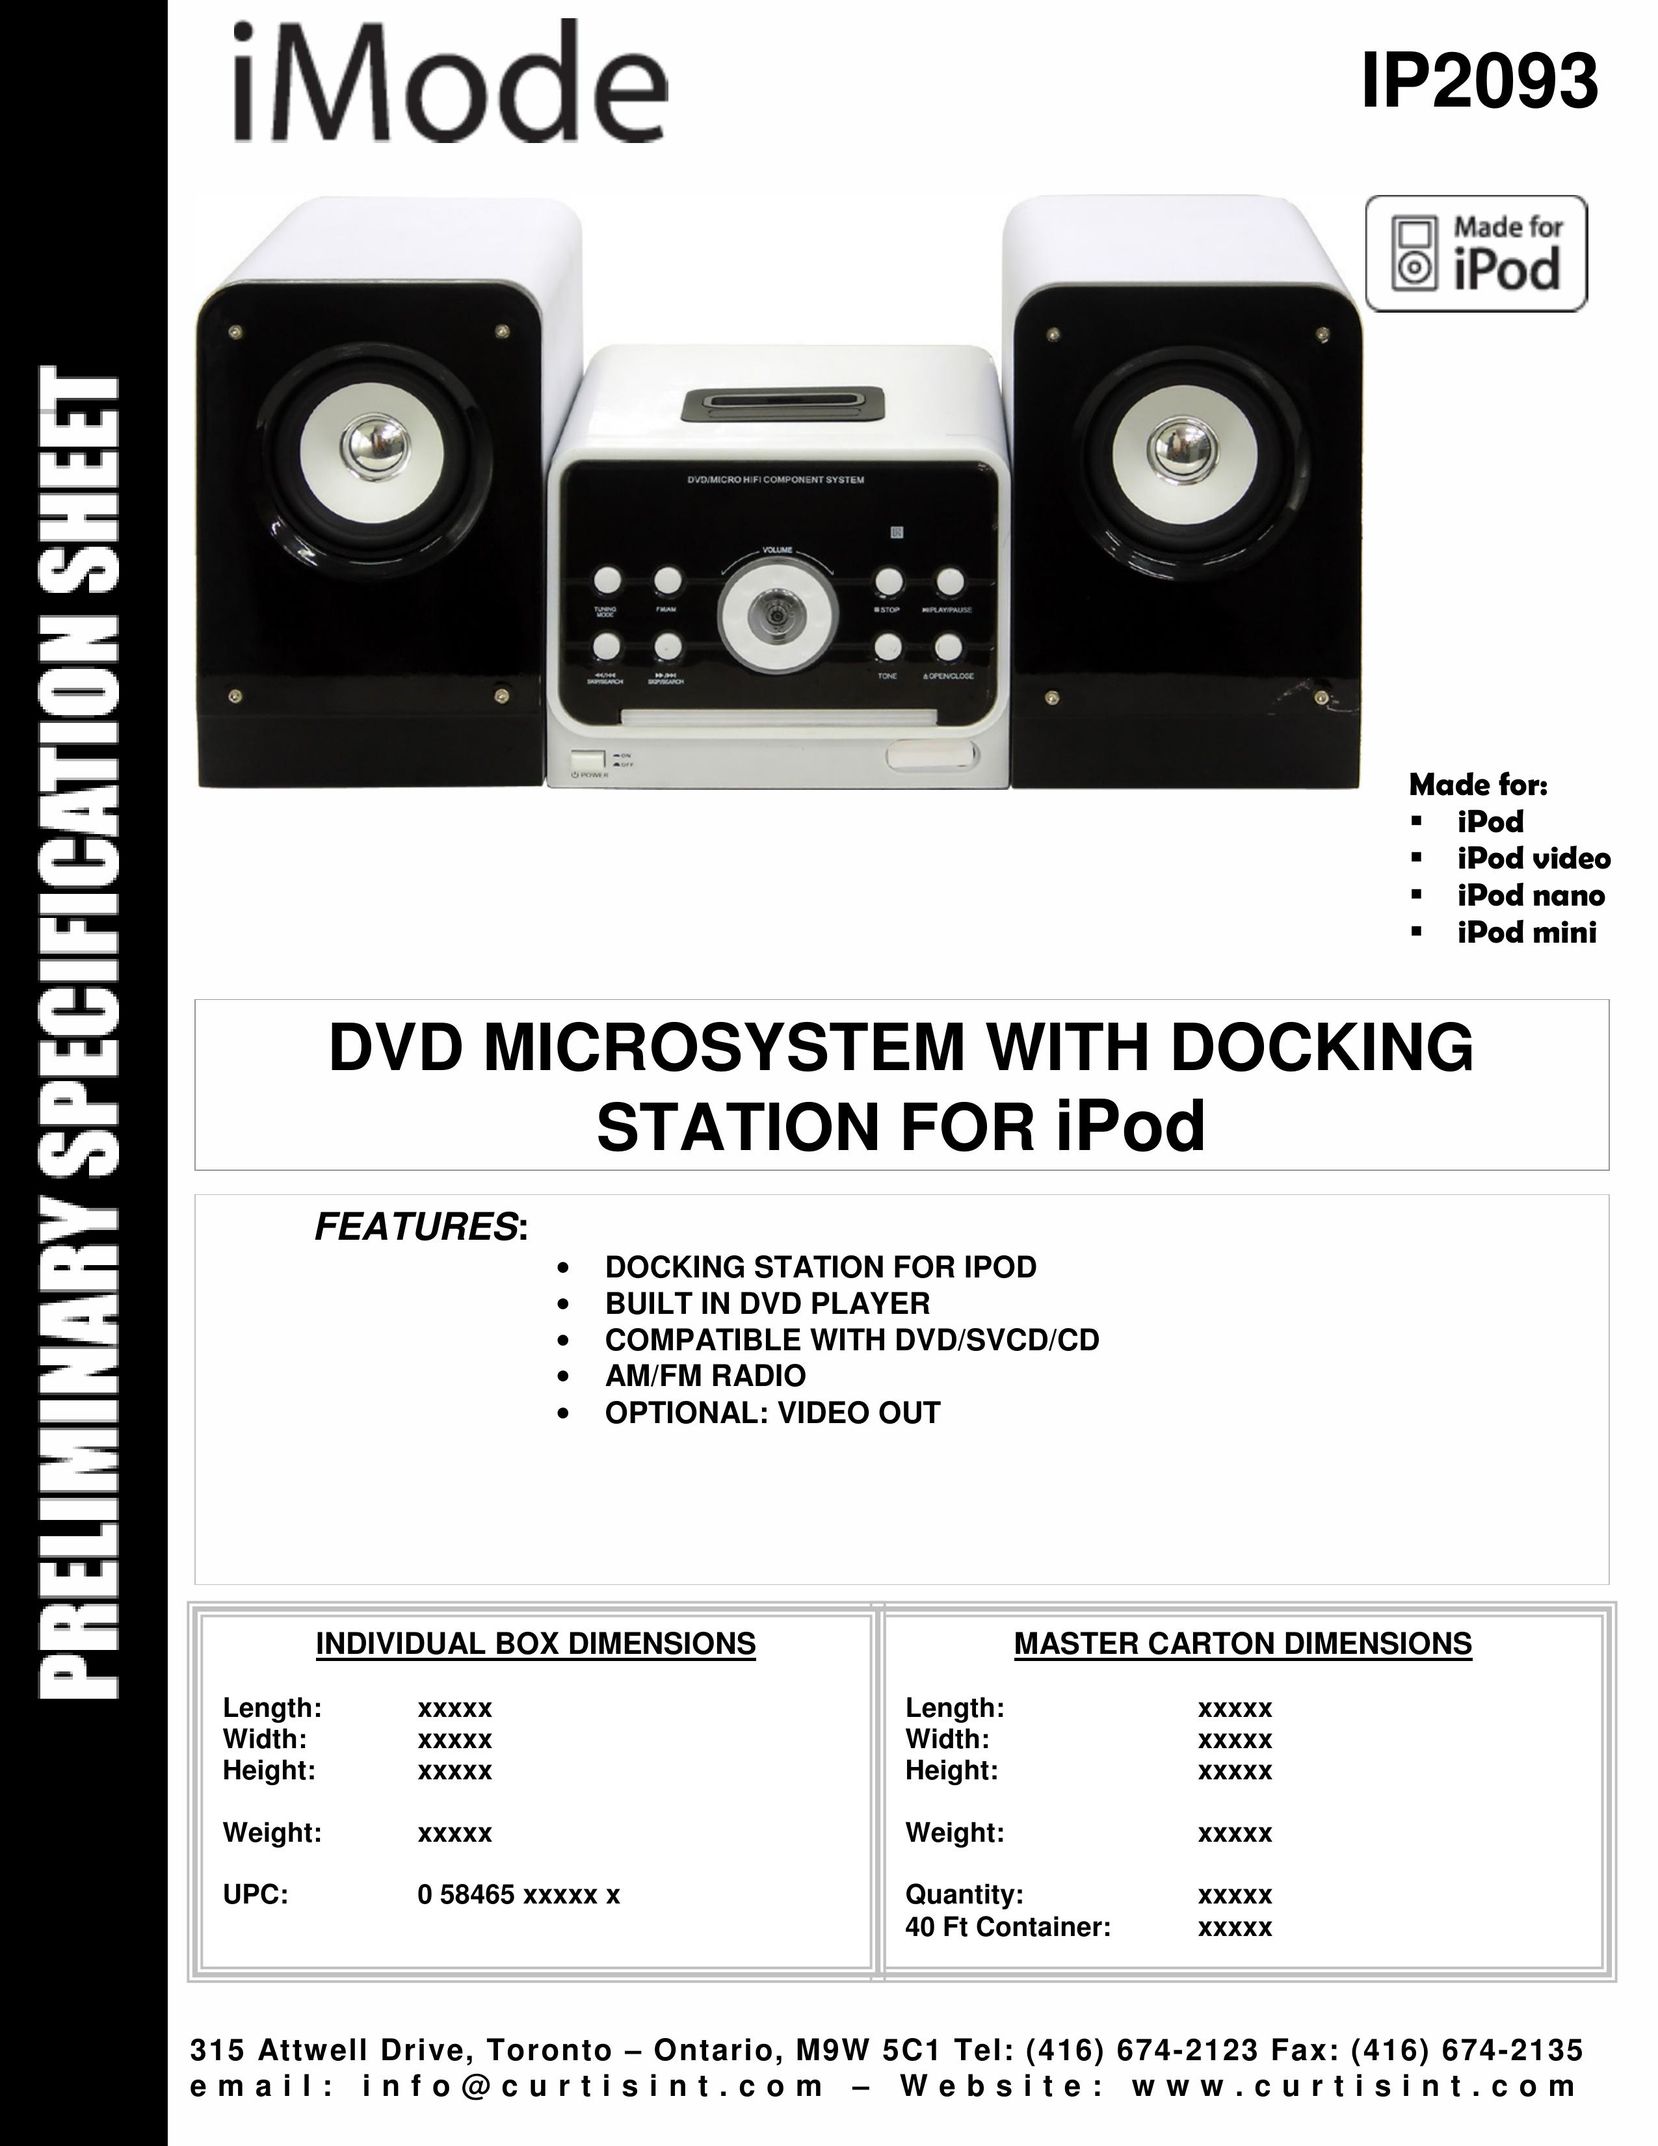 Curtis IP2093 MP3 Docking Station User Manual